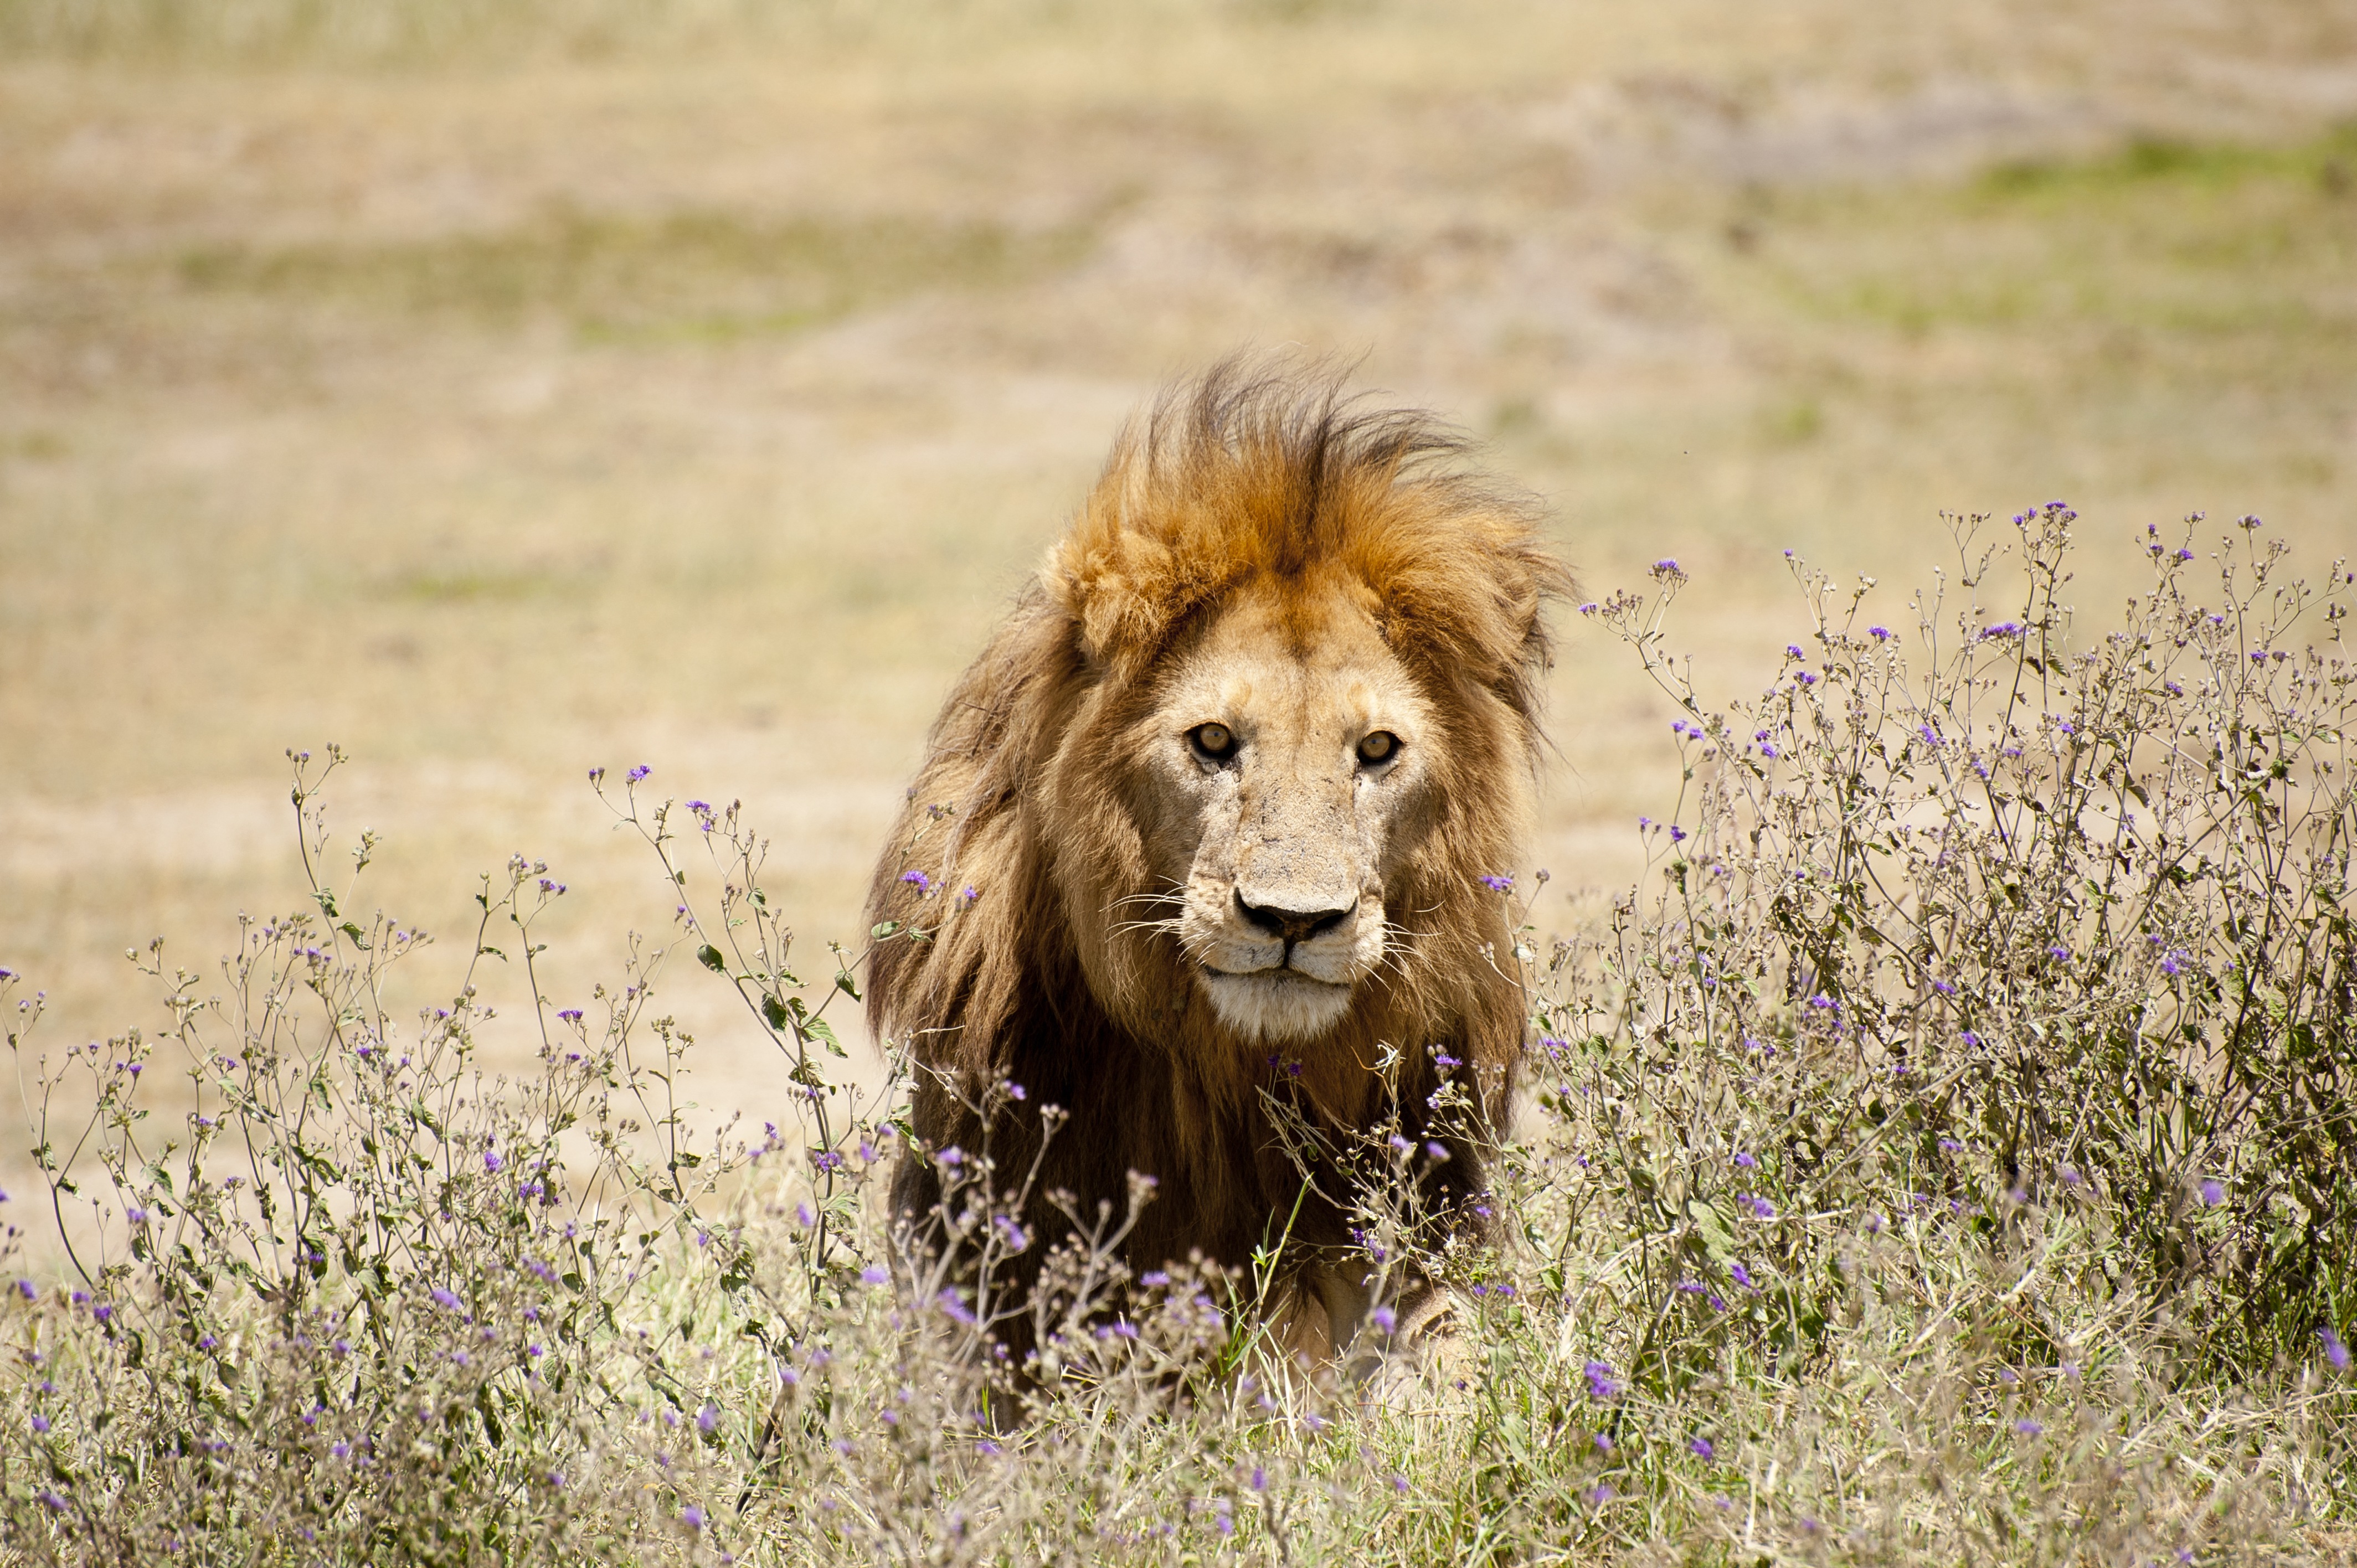 Engedélyezte az amerikai kormány egy oroszlán trófeájának beutaztatását Tanzániából, az állatvédők forronganak